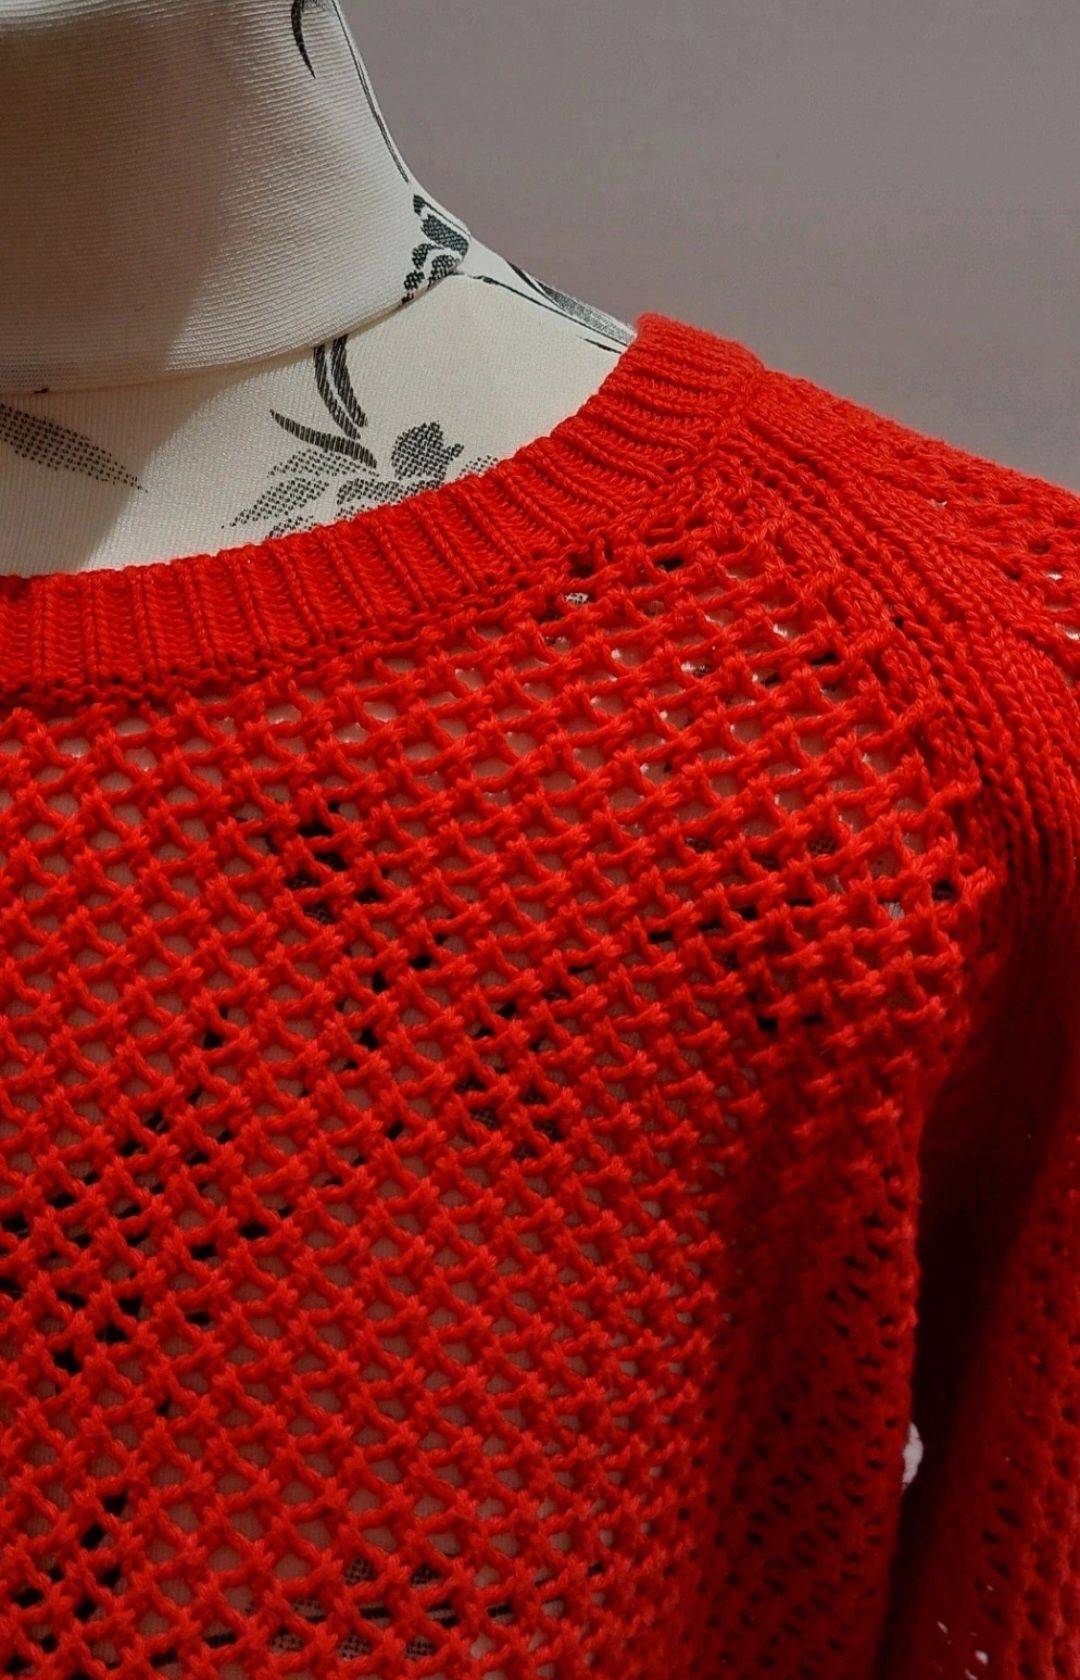 Sweter długi ażurowy piękny czerwony 100% bawelna Lee Cooper rozmiar M